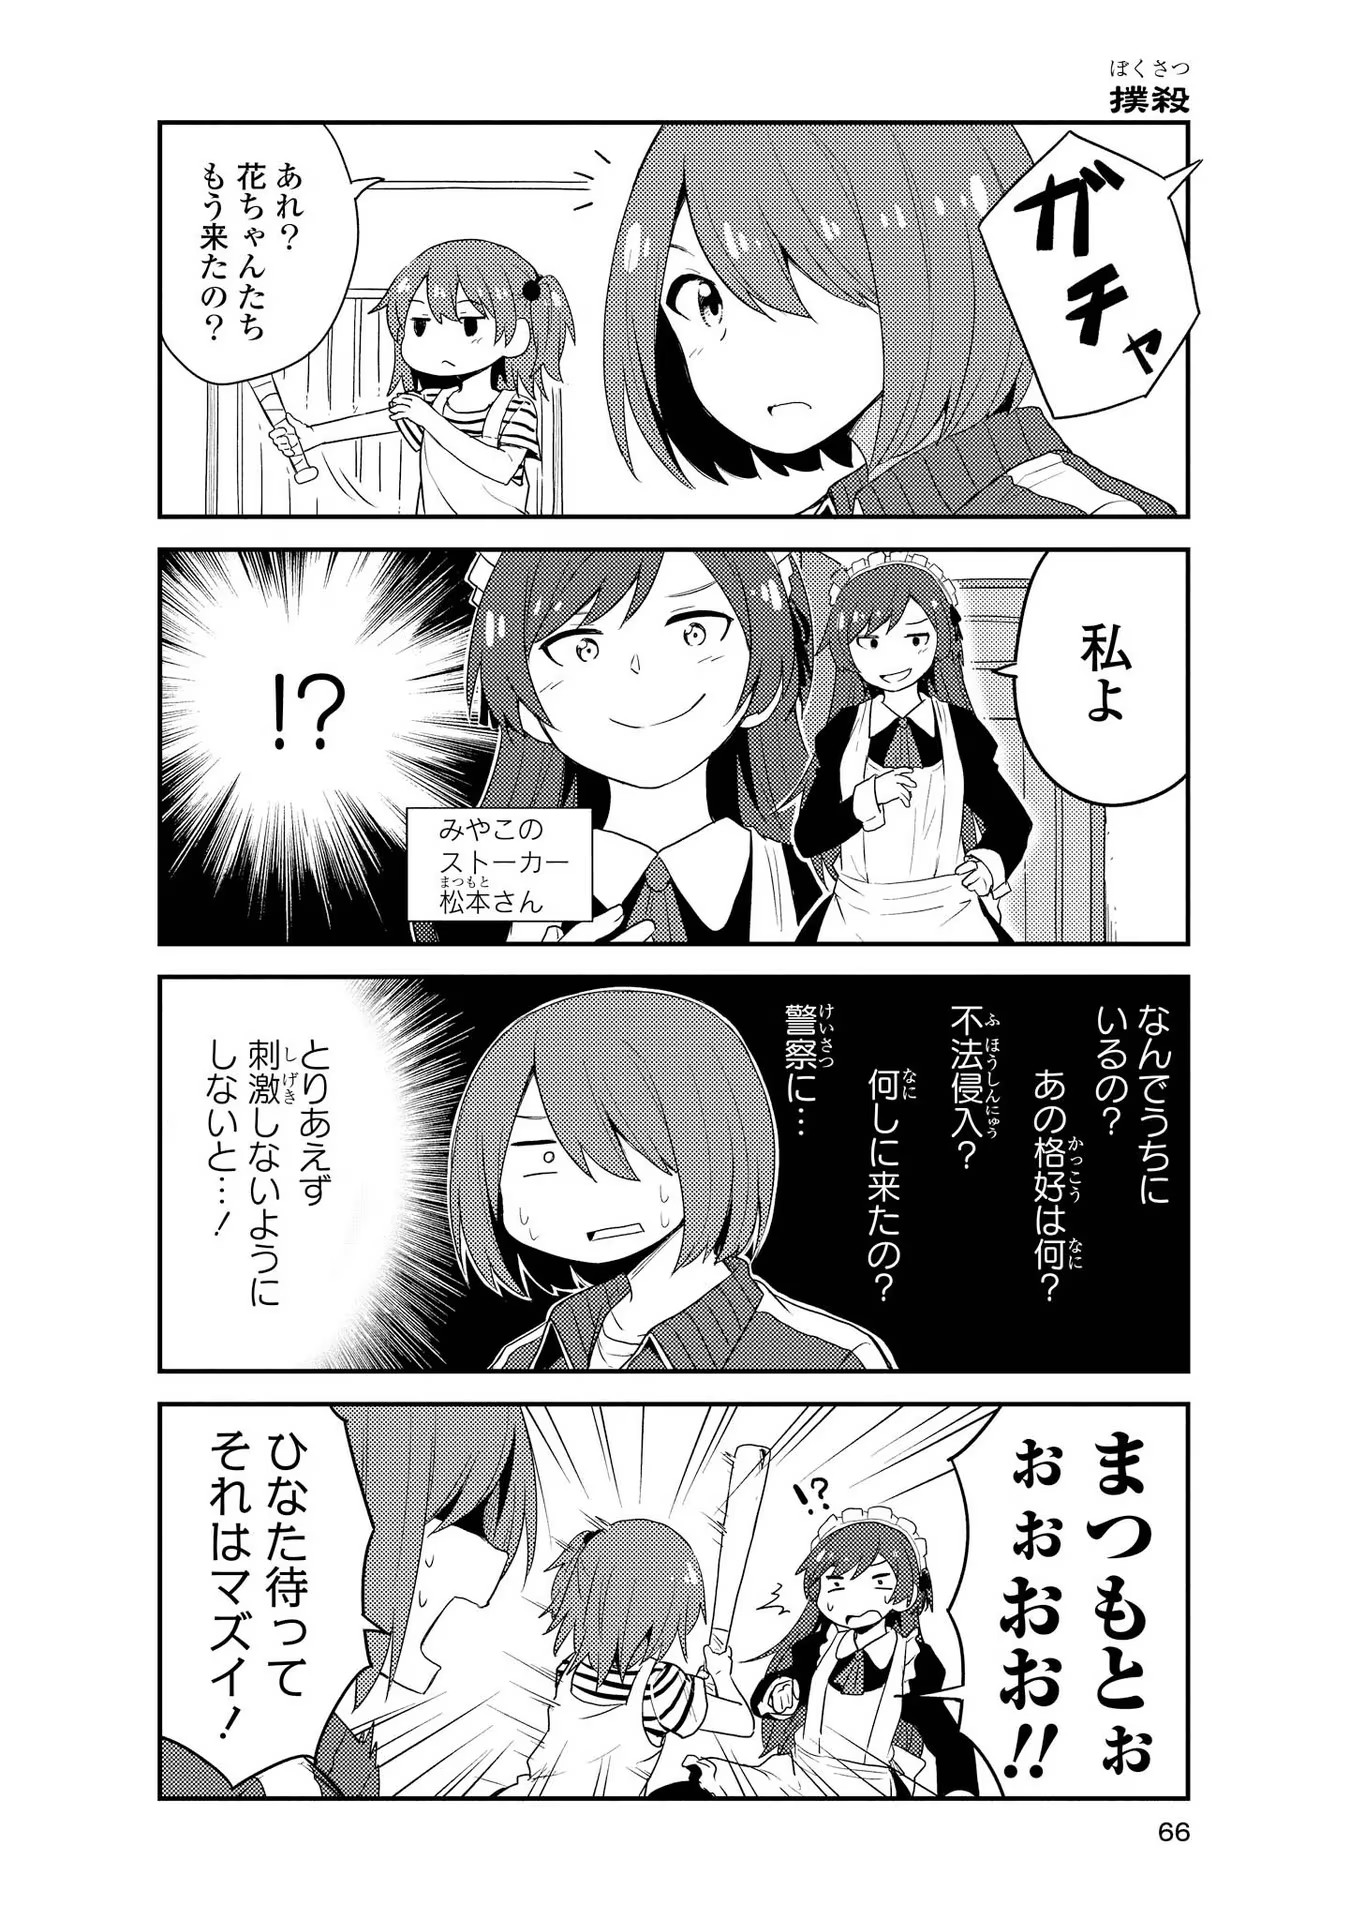 Watashi ni Tenshi ga Maiorita! - Chapter 151 - Page 4